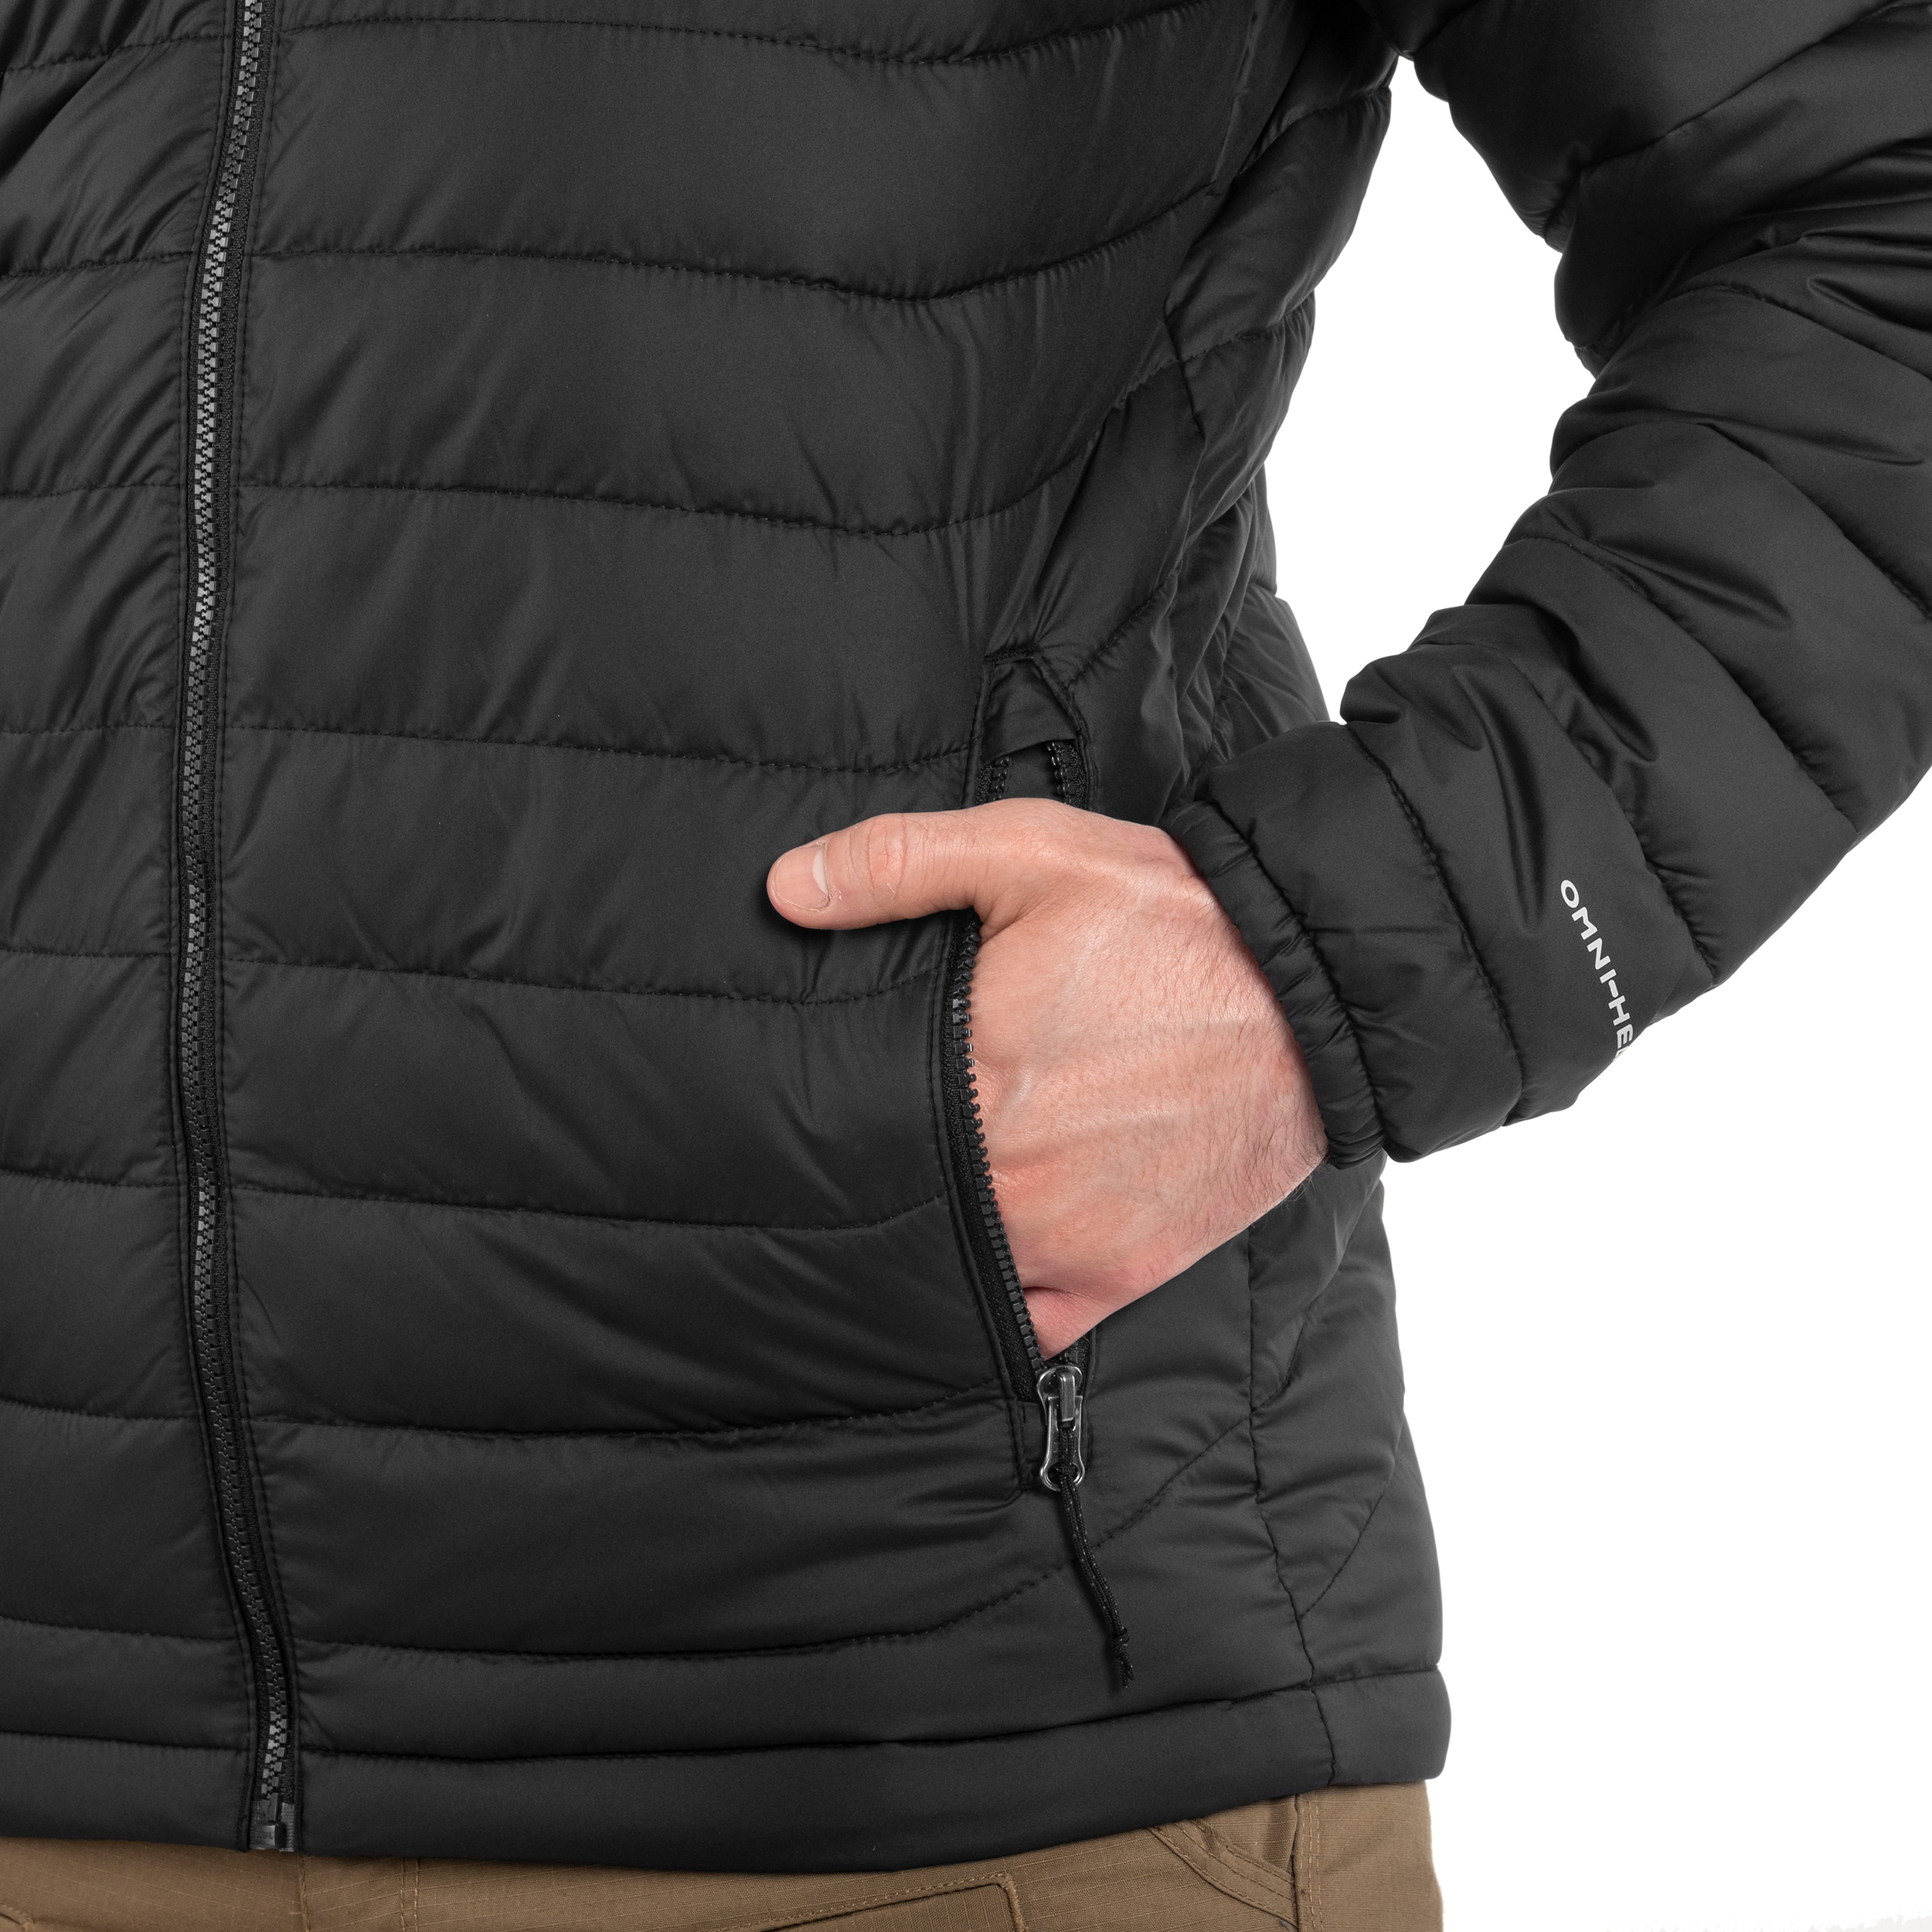 Куртка Columbia Powder Lite Jacket - Black